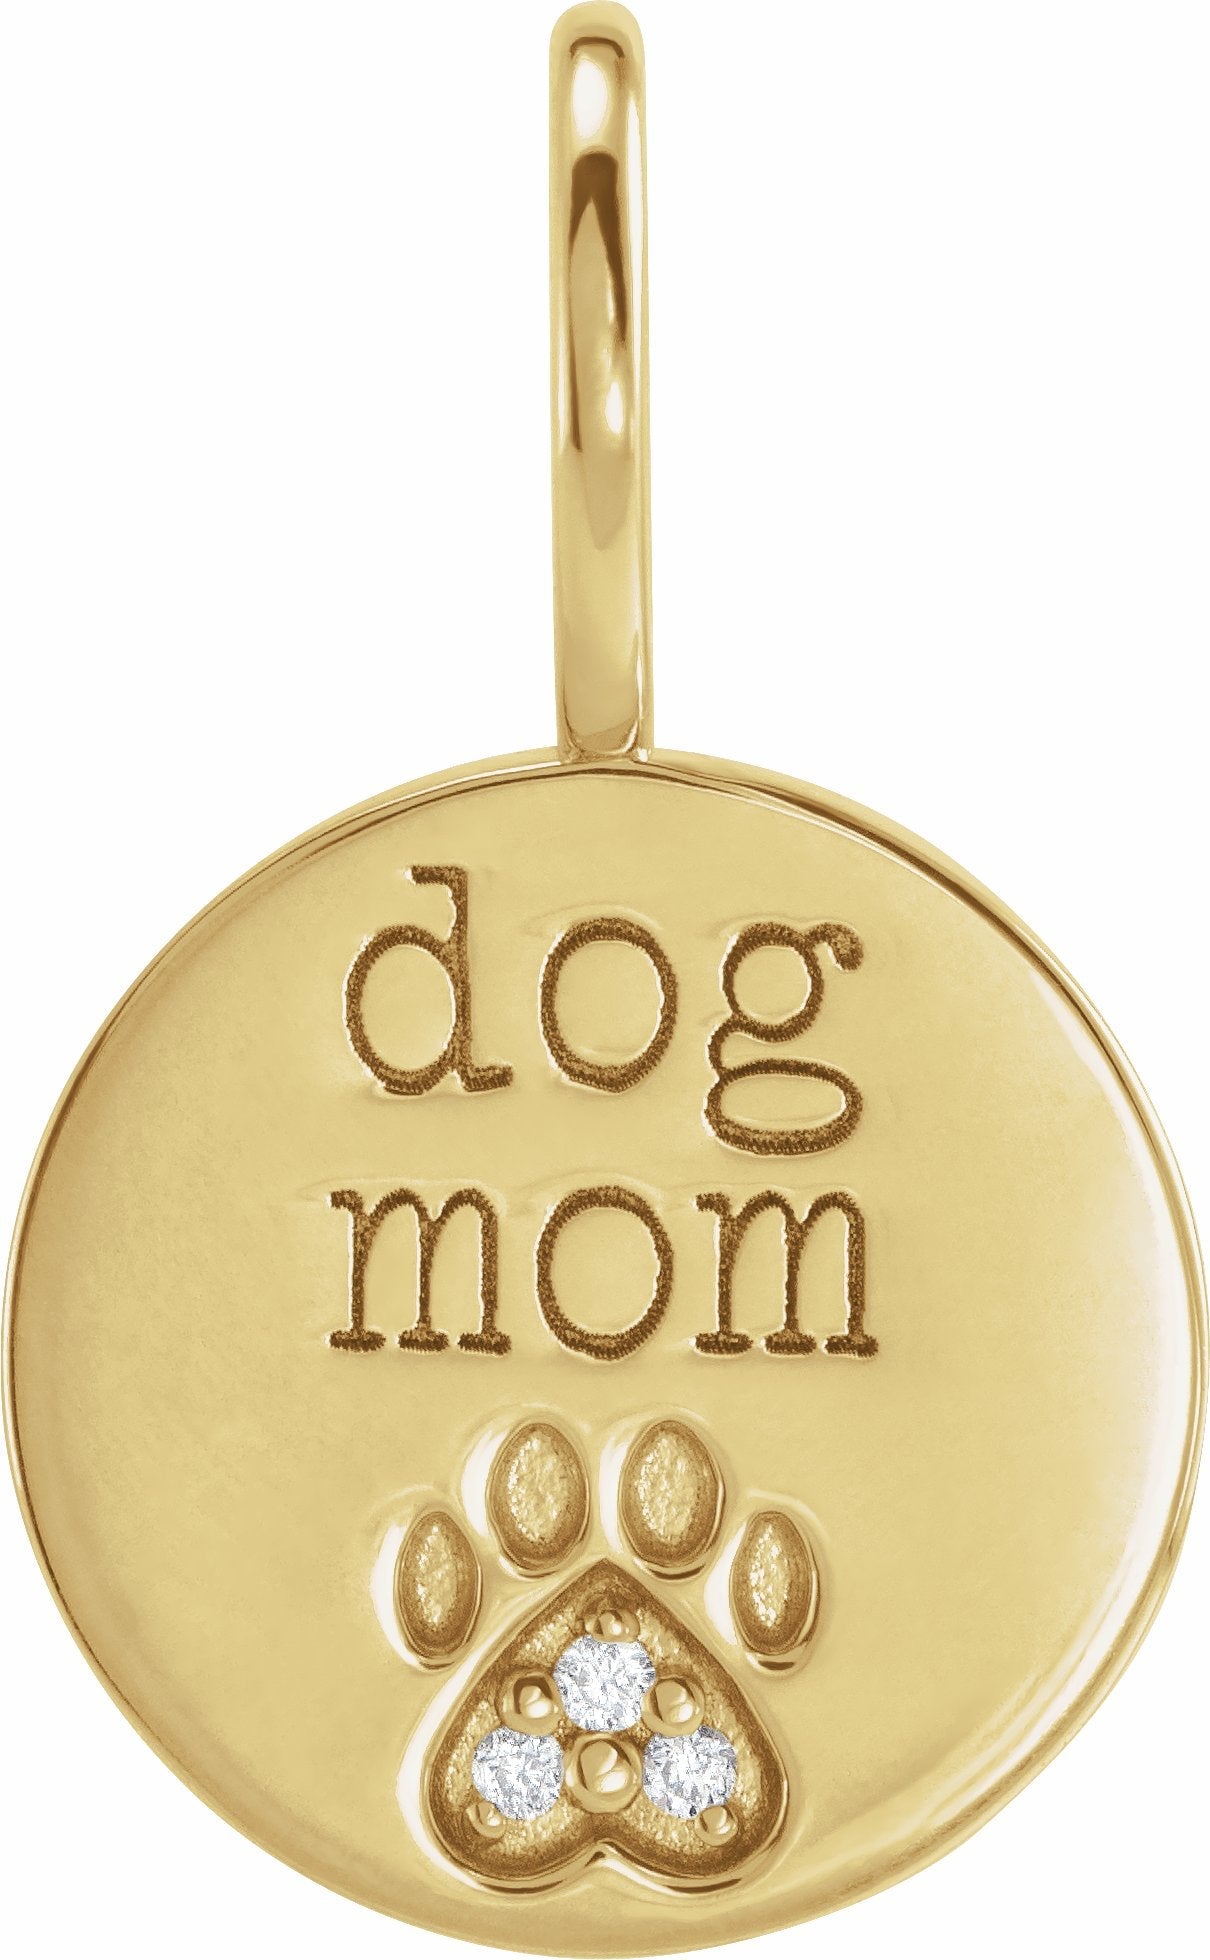 Dog Mom Charm - erin gallagher